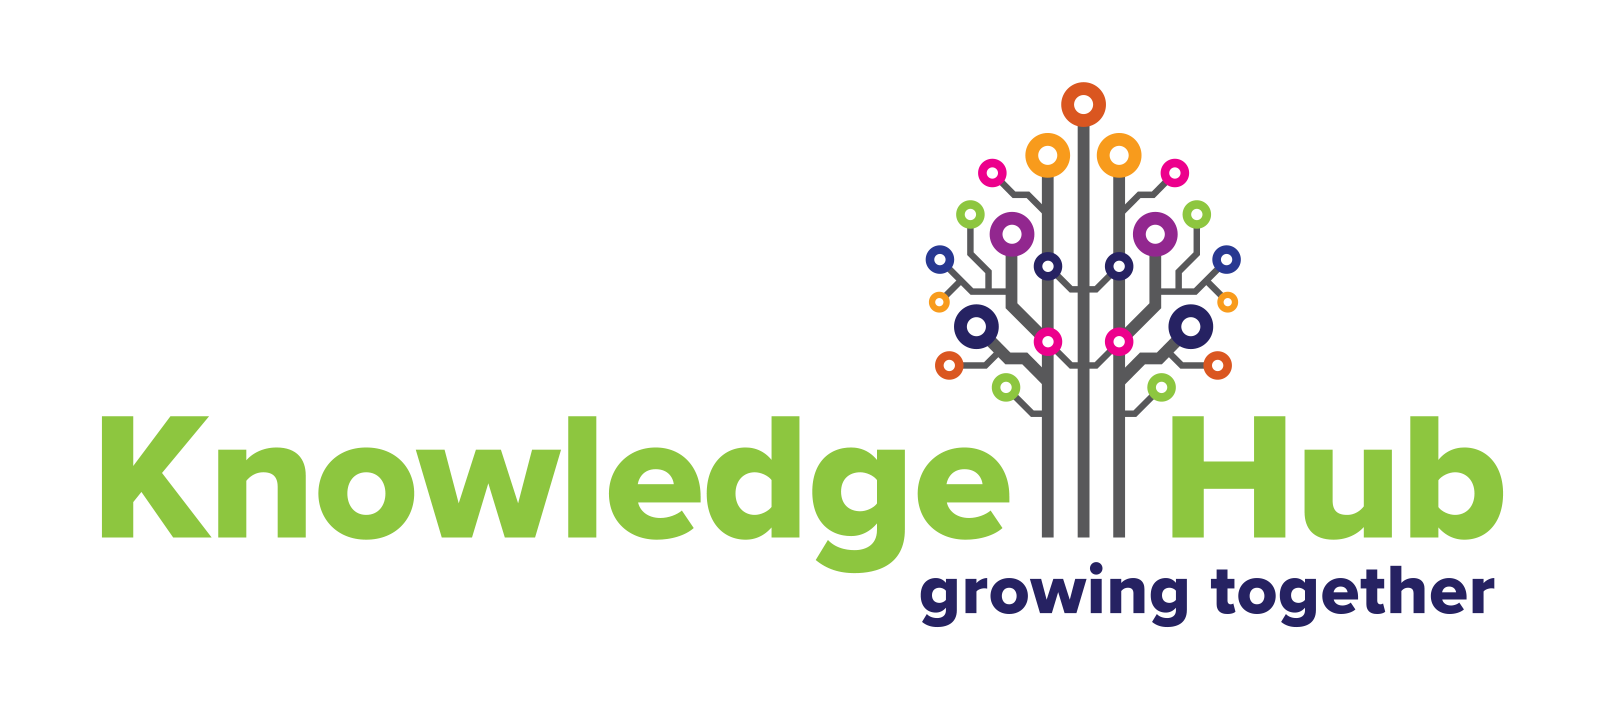 Knowledgehub logo